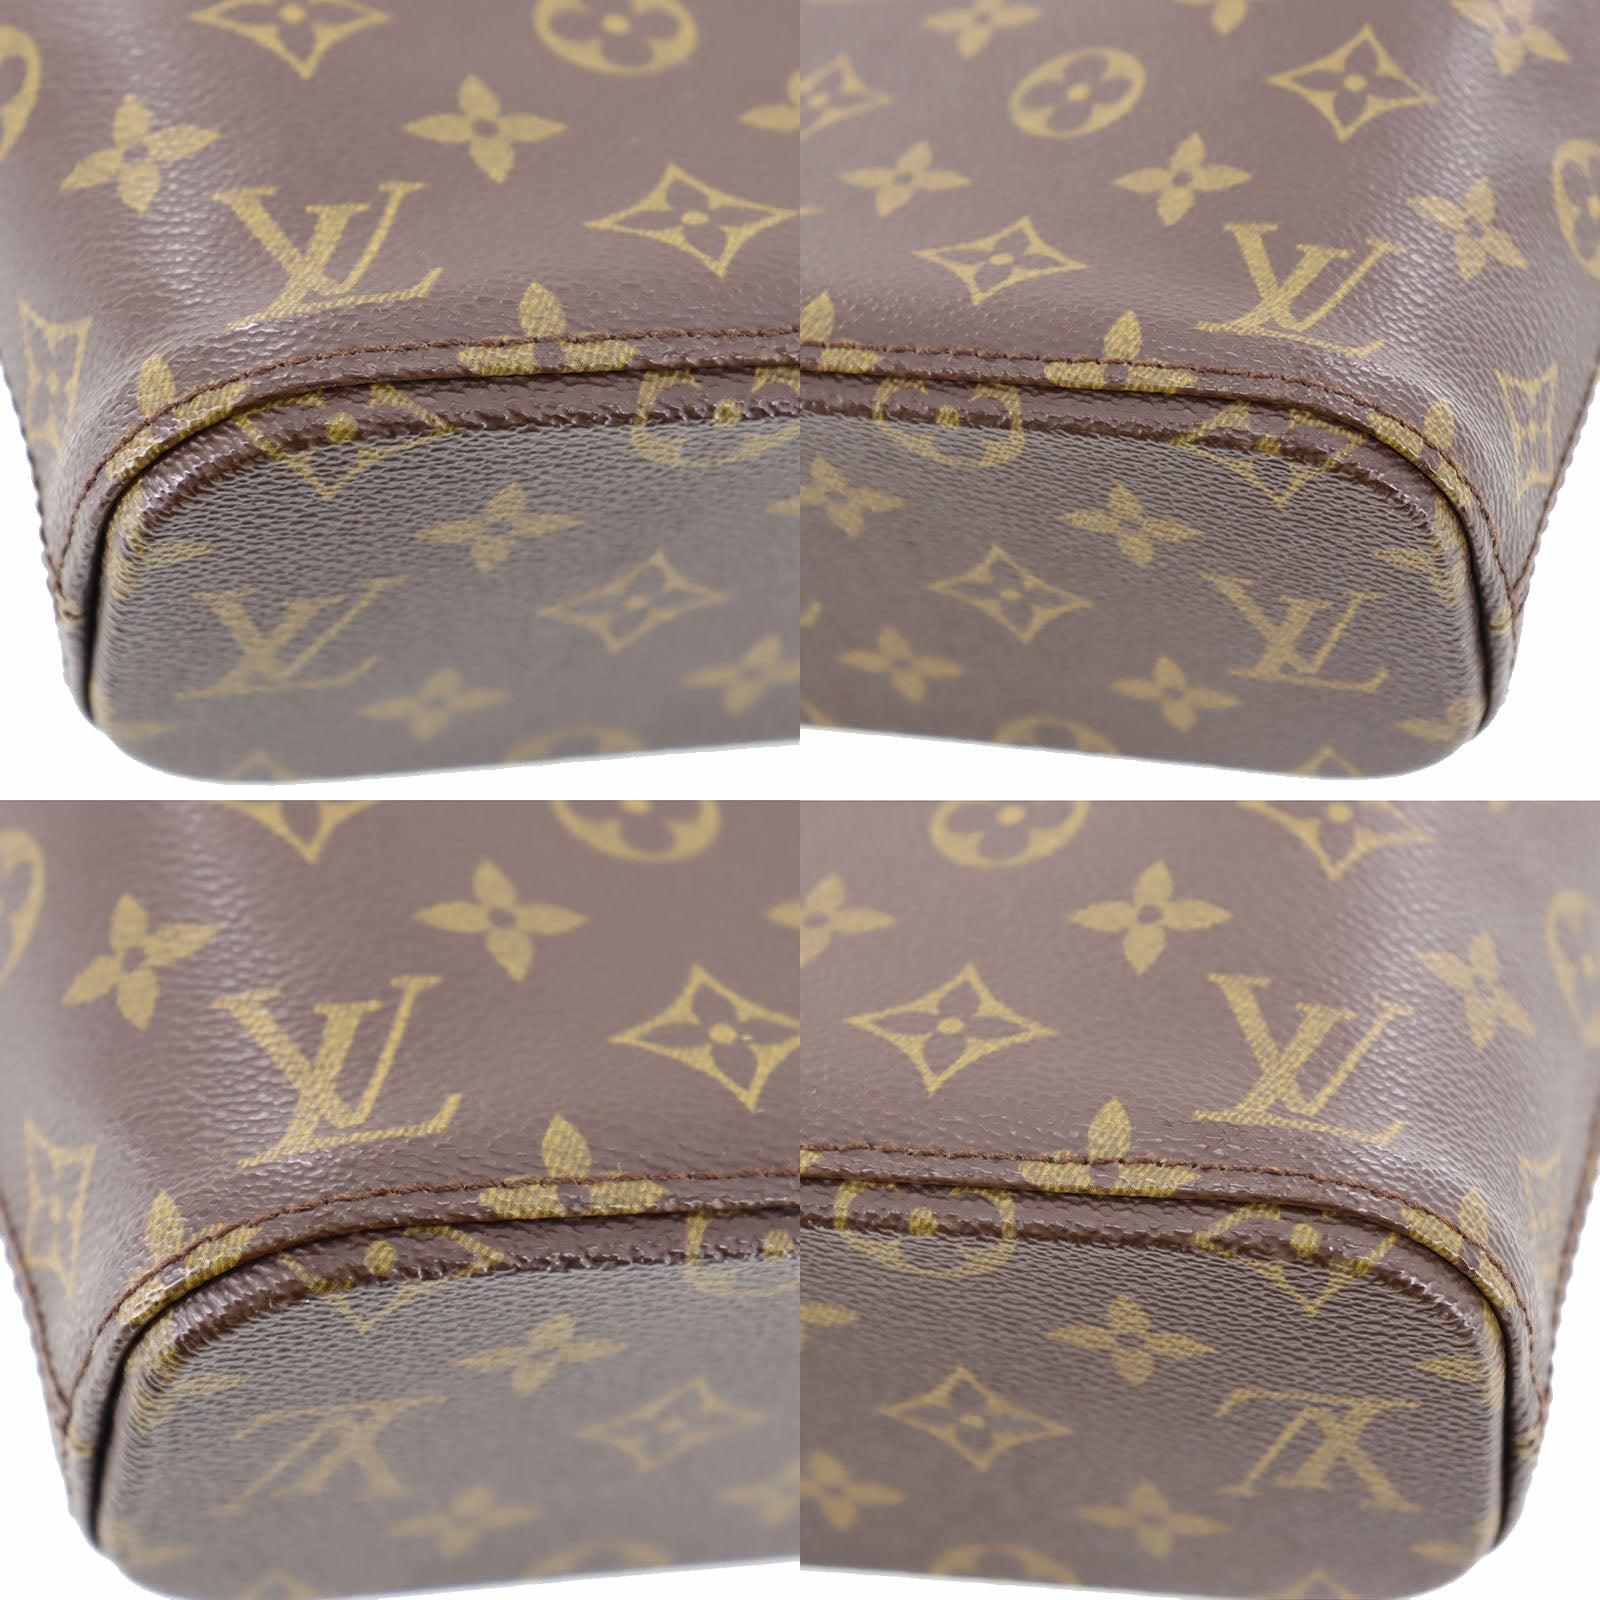 Vendôme MM Monogram Canvas - Handbags M46508